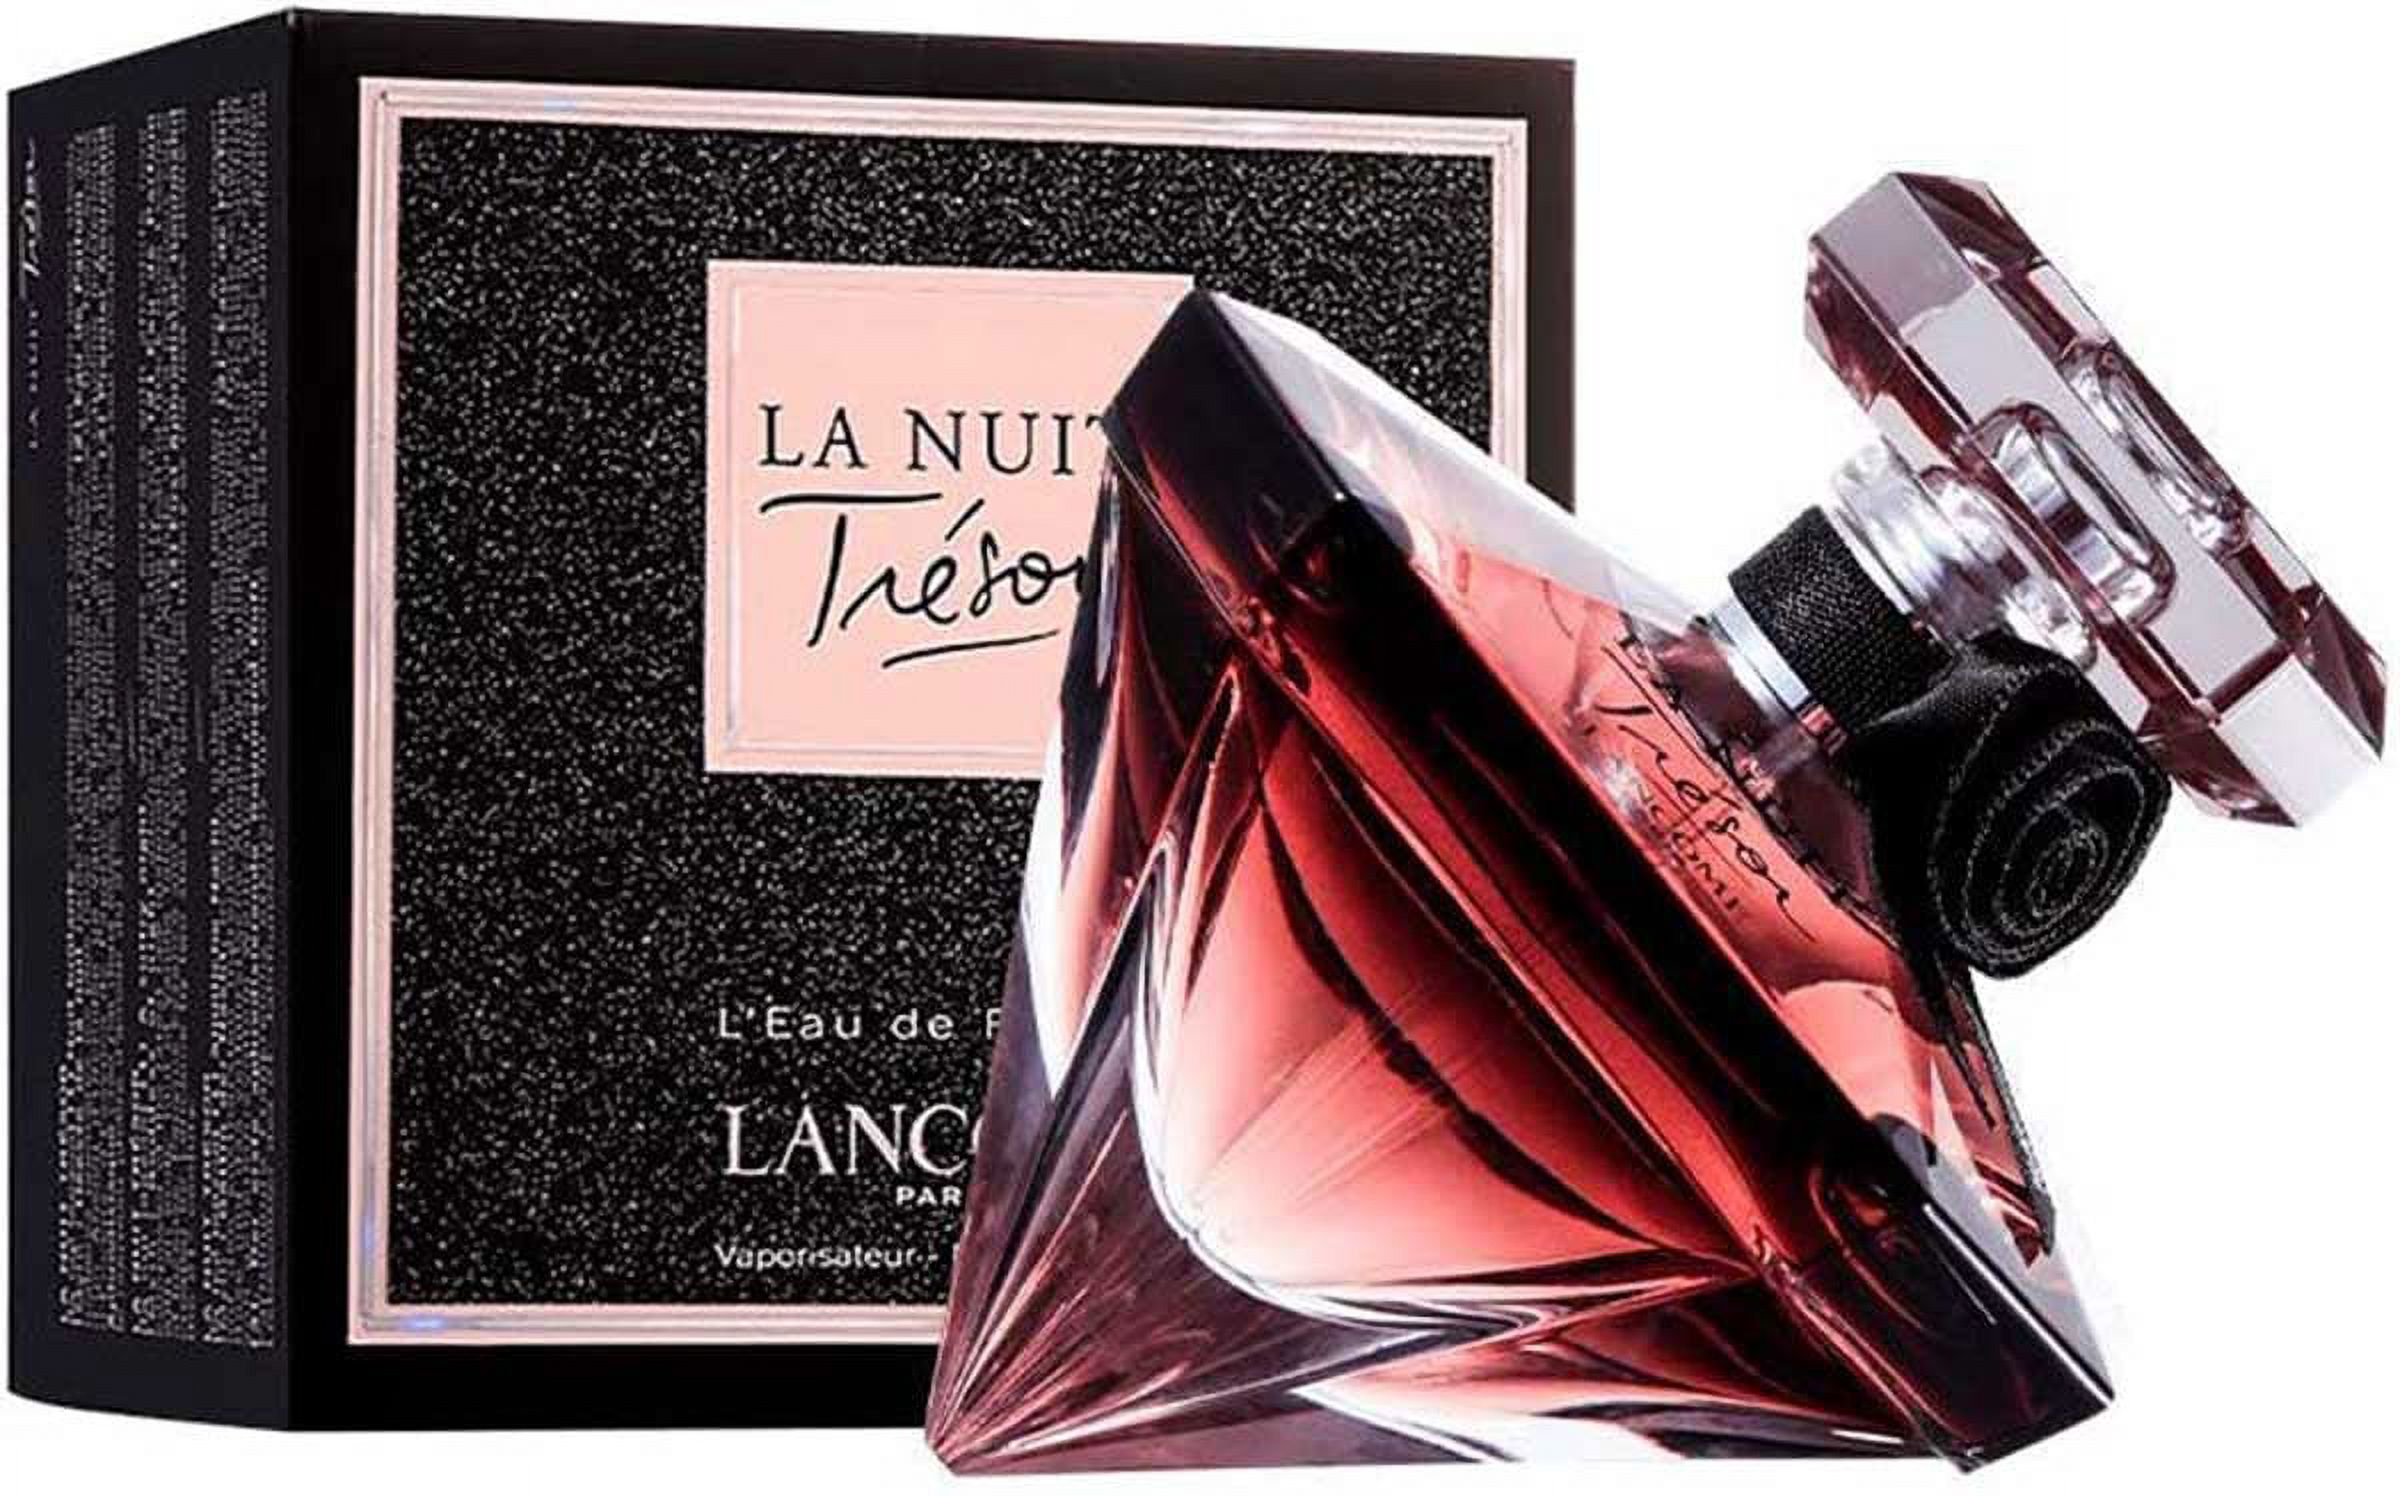 Lancome La Nuit Tresor Eau de Parfum, Perfume for Women, 1.7 Oz - image 2 of 5